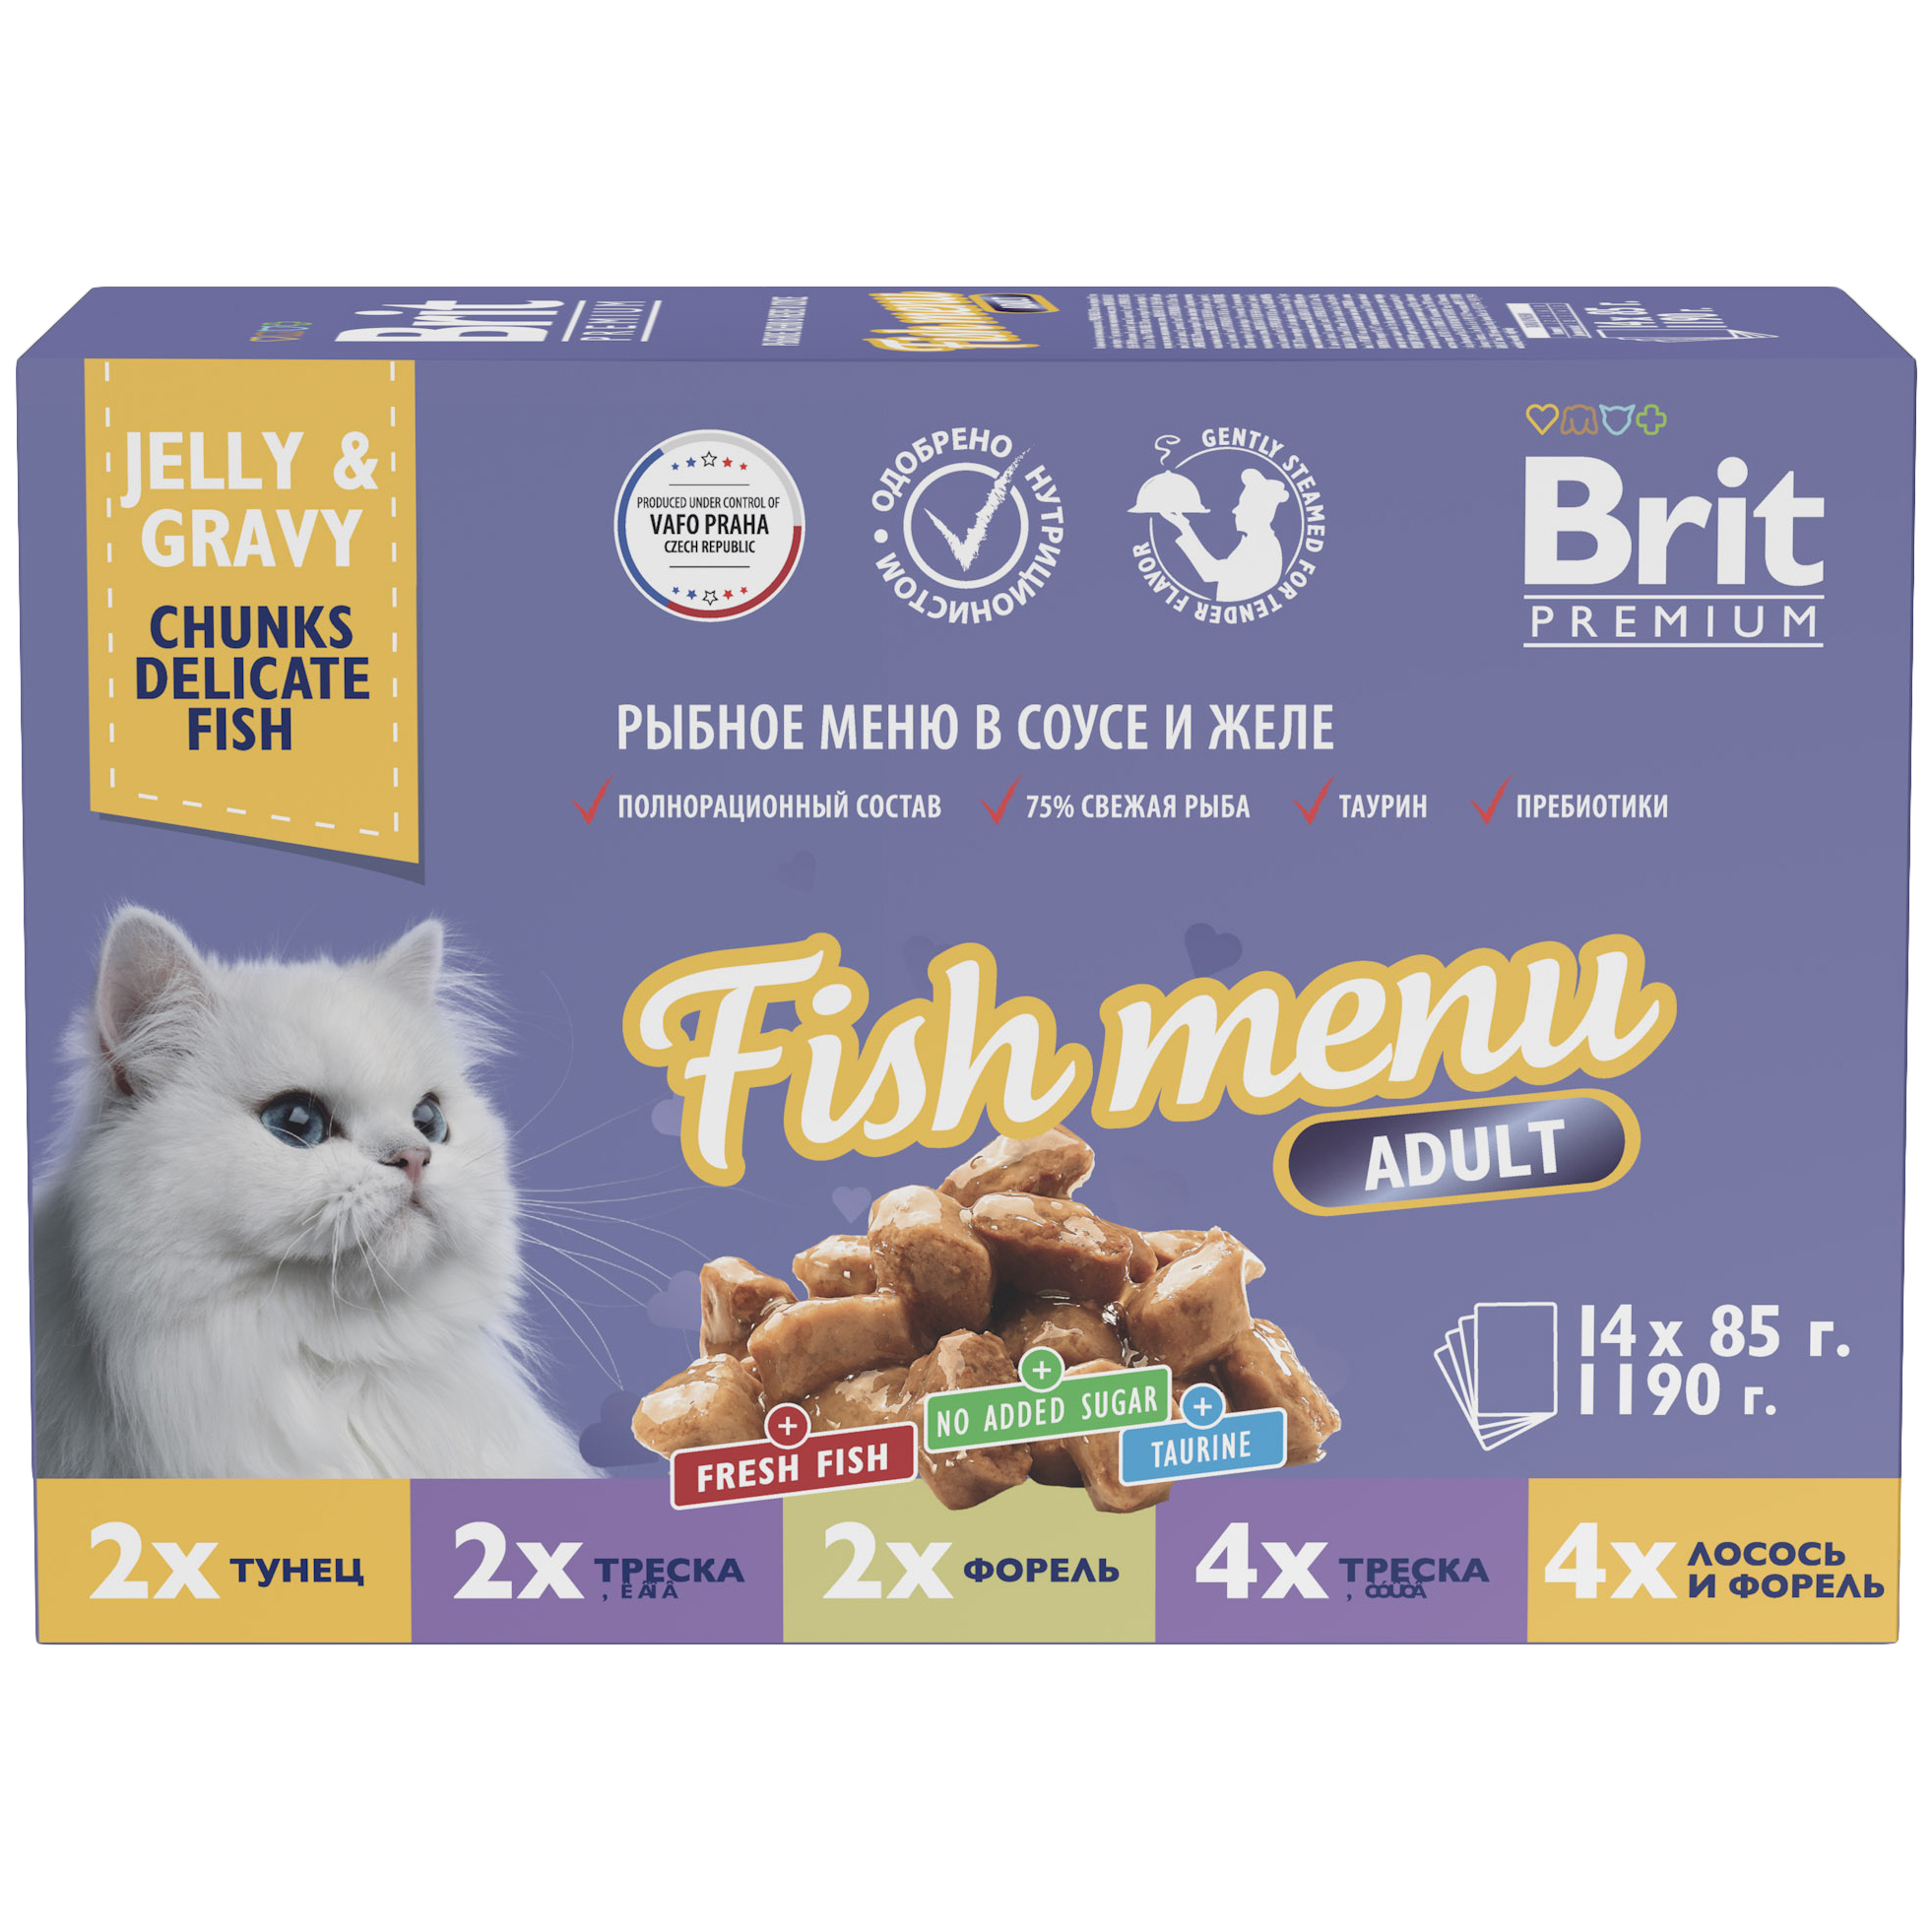 Влажный корм для кошек Brit Premium Рыбное меню в соусе и желе 14 шт по 85 г